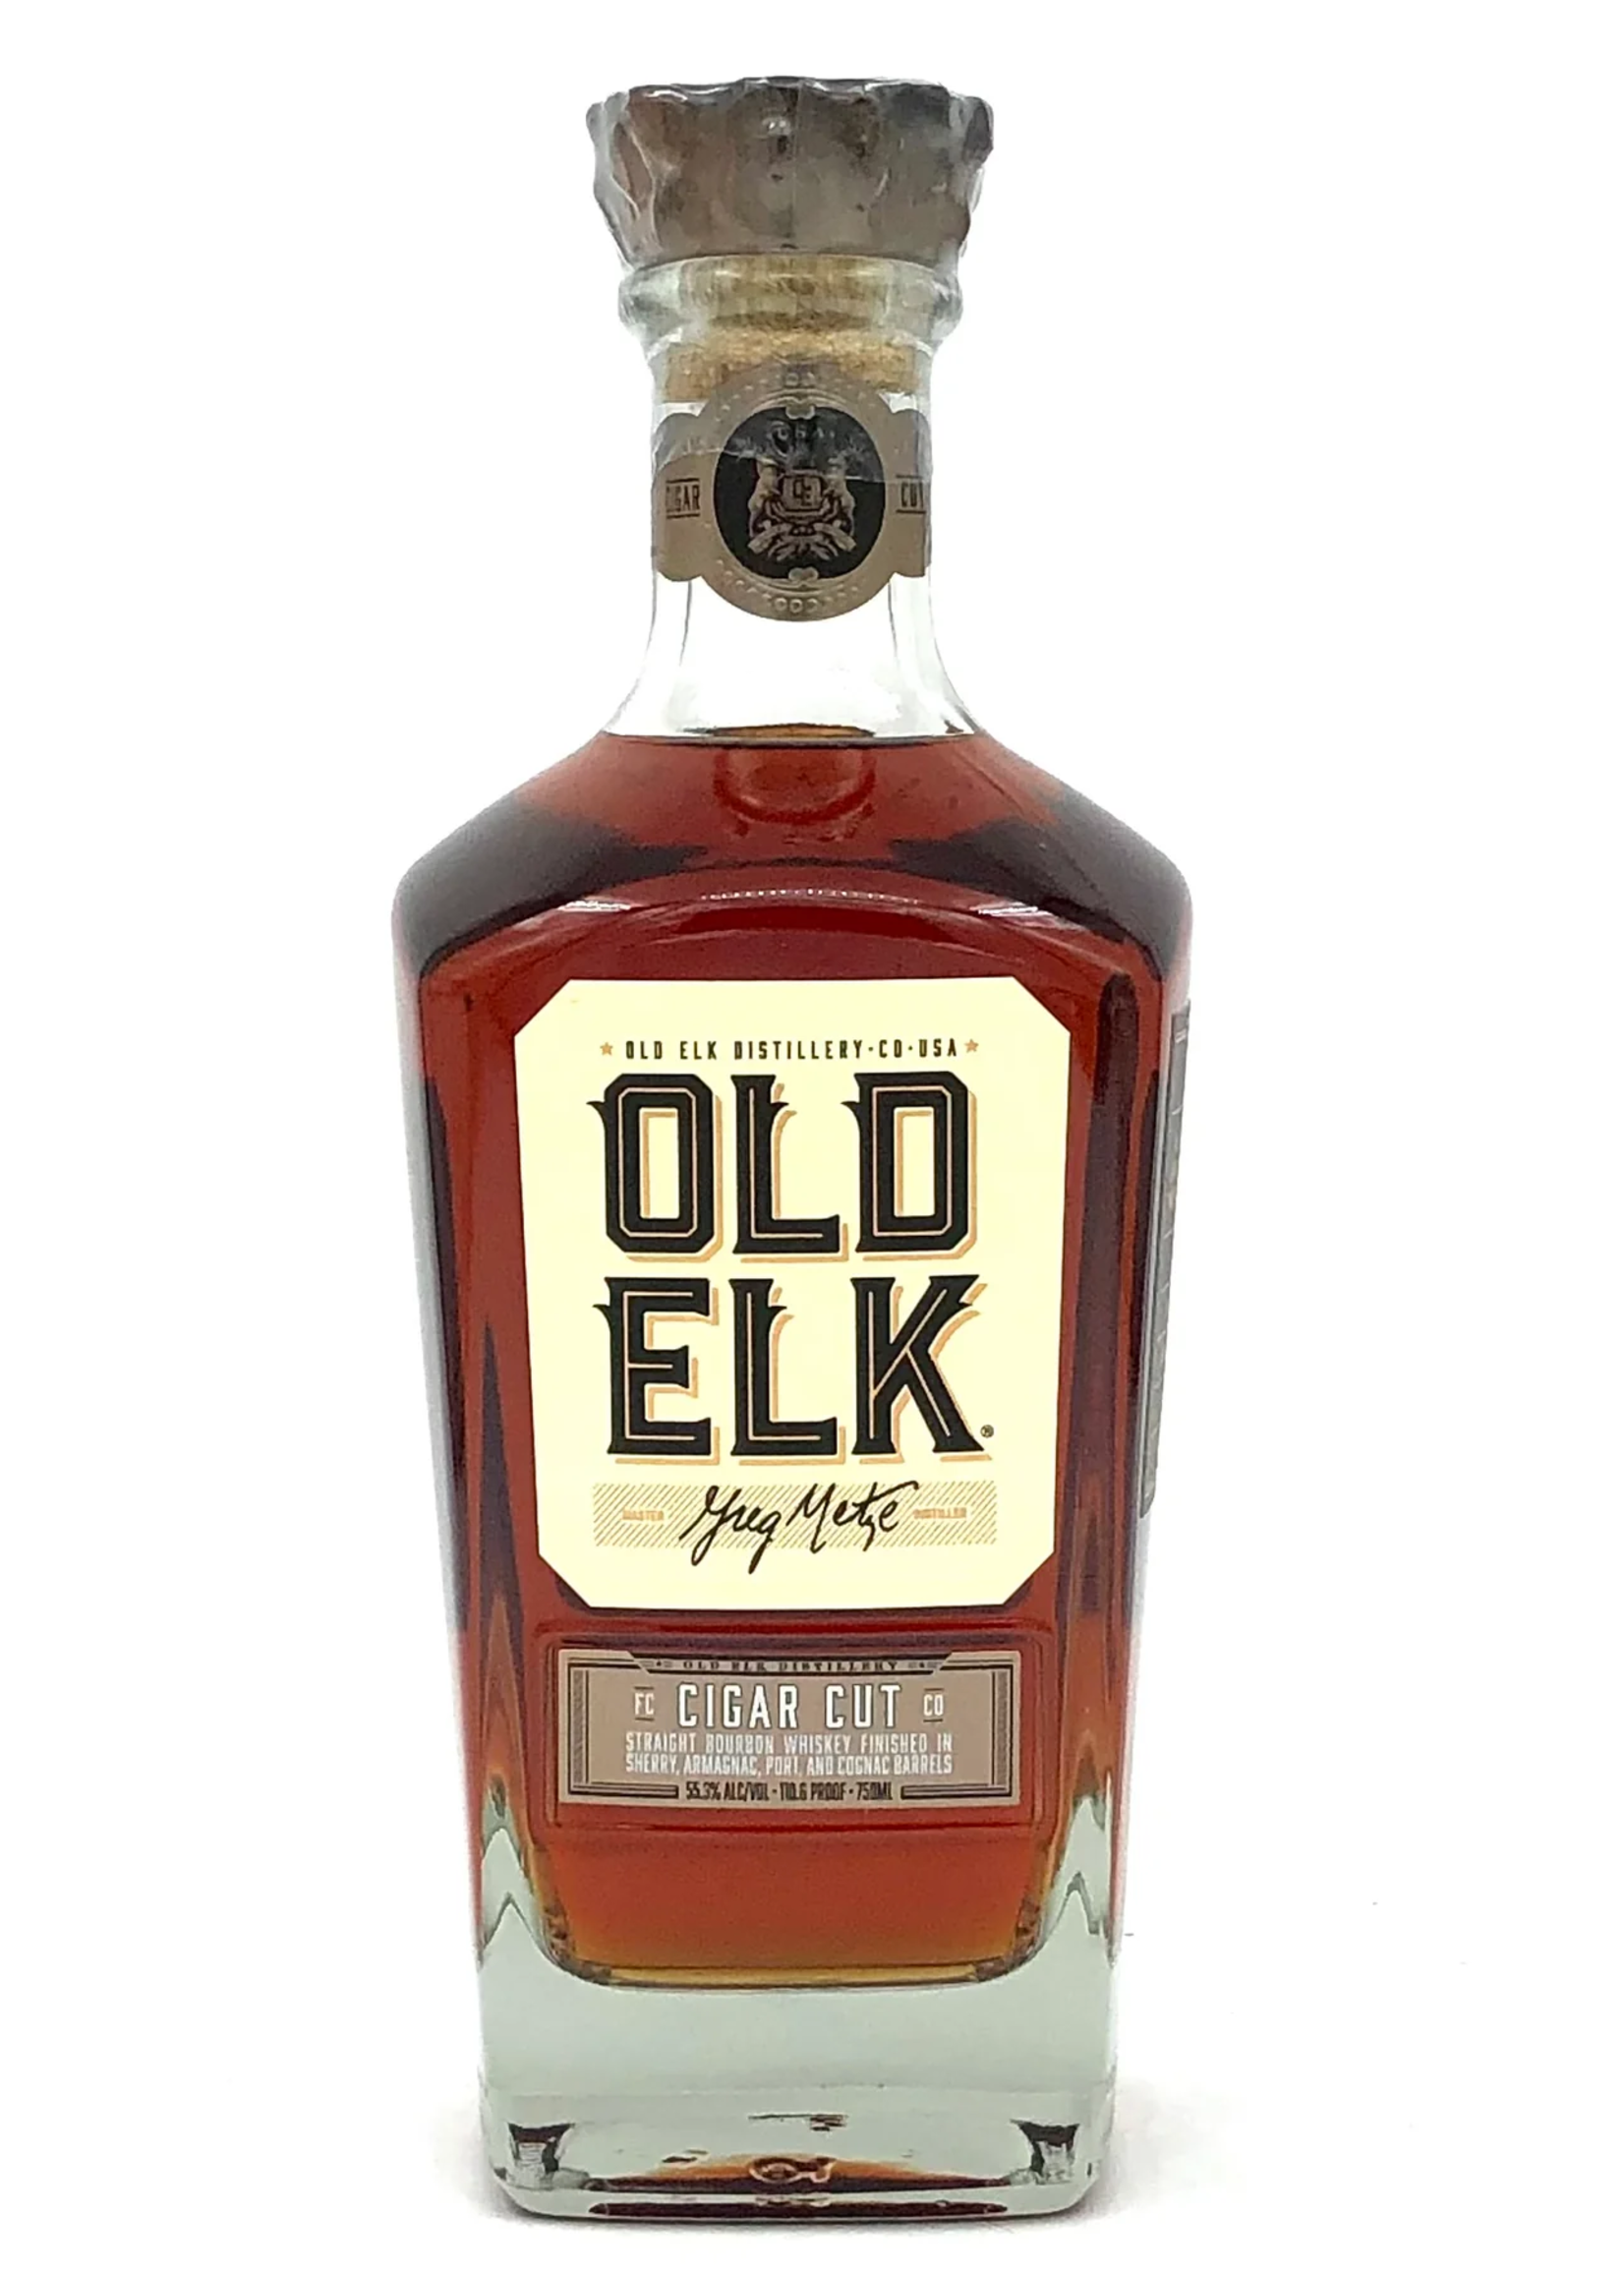 Old Elk Old Elk Blended American Whiskey Cigar Cut 110.6Proof 750ml